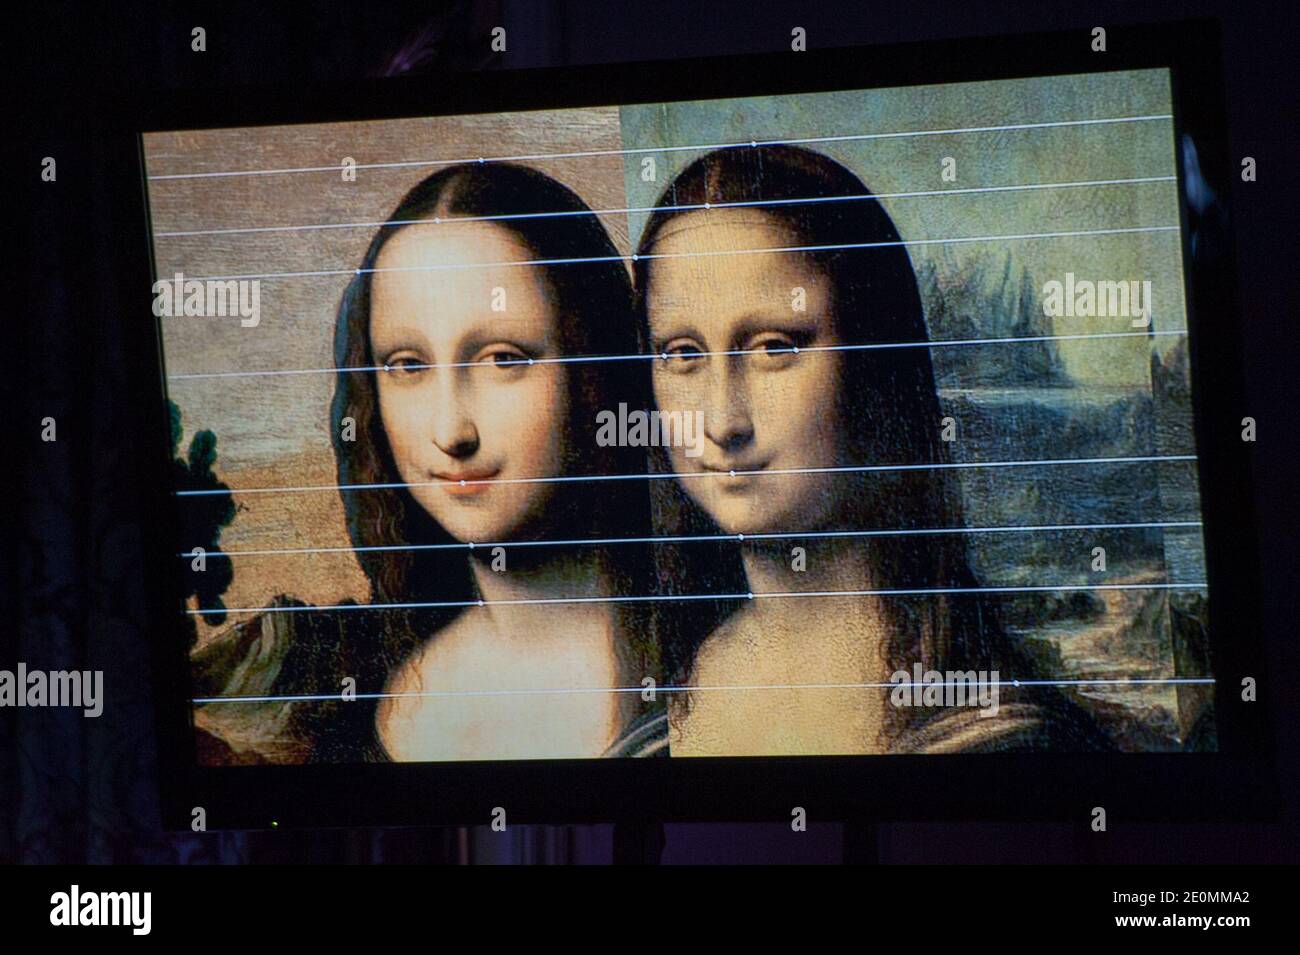 Immagine di uno schermo televisivo che mostra "Isleworth Mona Lisa" (L) e il capolavoro del Museo del Louvre da Vinci, realizzato durante la presentazione da parte della Fondazione Mona Lisa a le Beau Rivage a Ginevra, Svizzera, il 27 settembre 2012 come precedente versione della "Mona Lisa" dipinta da Leonardo da Vinci, anche se alcuni esperti hanno detto che l'affermazione era improbabile. La Fondazione Monna Lisa, con sede a Zurigo, ha presentato quello che ha descritto come un "ritratto di Lisa del Giocondo", insieme ai risultati di 35 anni di ricerca e di prove scientifiche che affermava di essere il lavoro di da Vinci e di essere stato completato abou Foto Stock